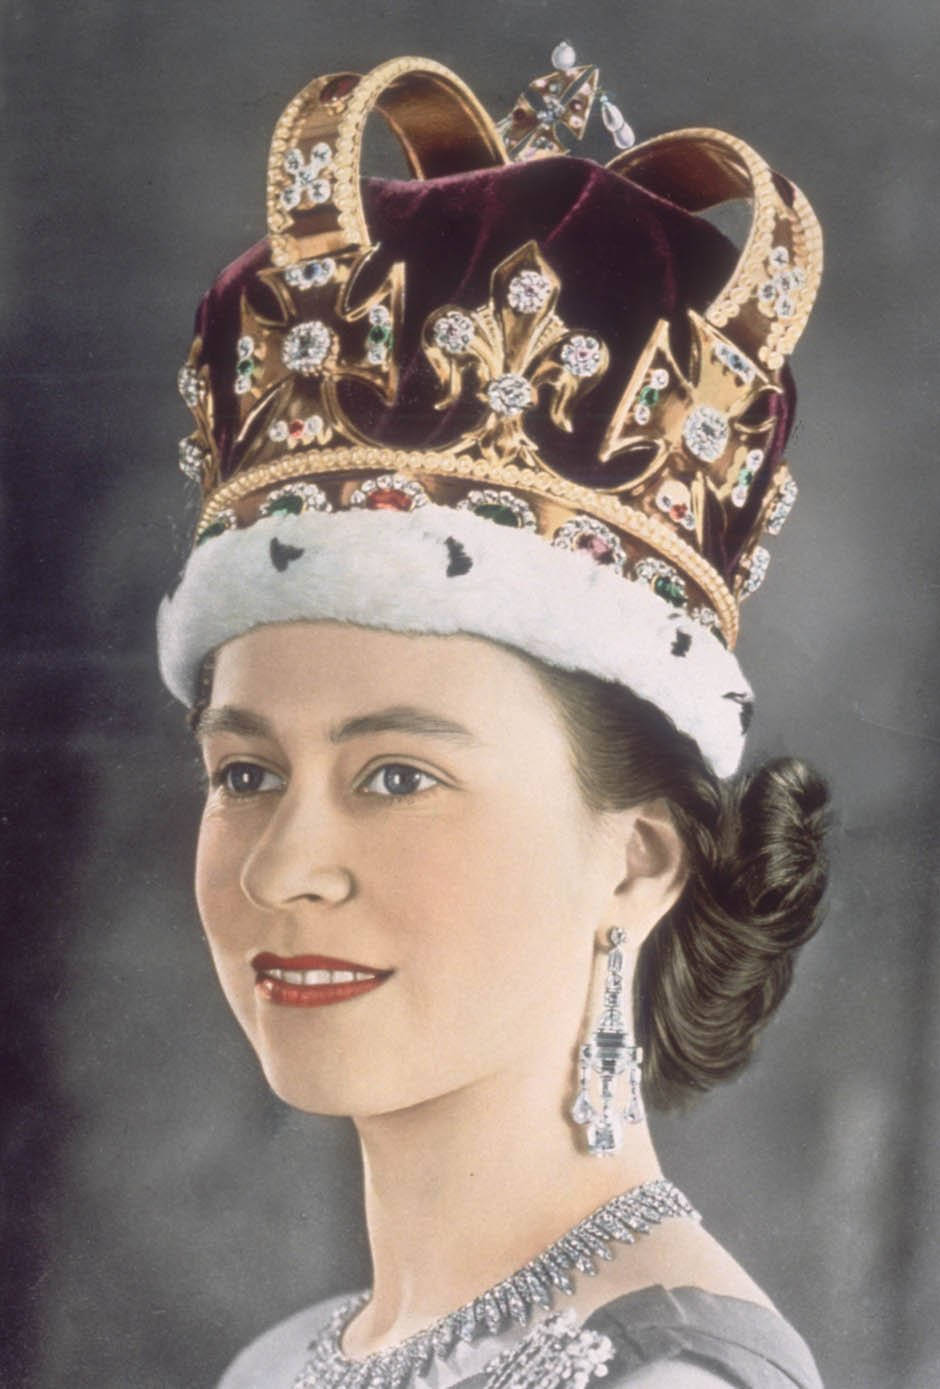 Queen Elizabeth Portrait With Crown Background